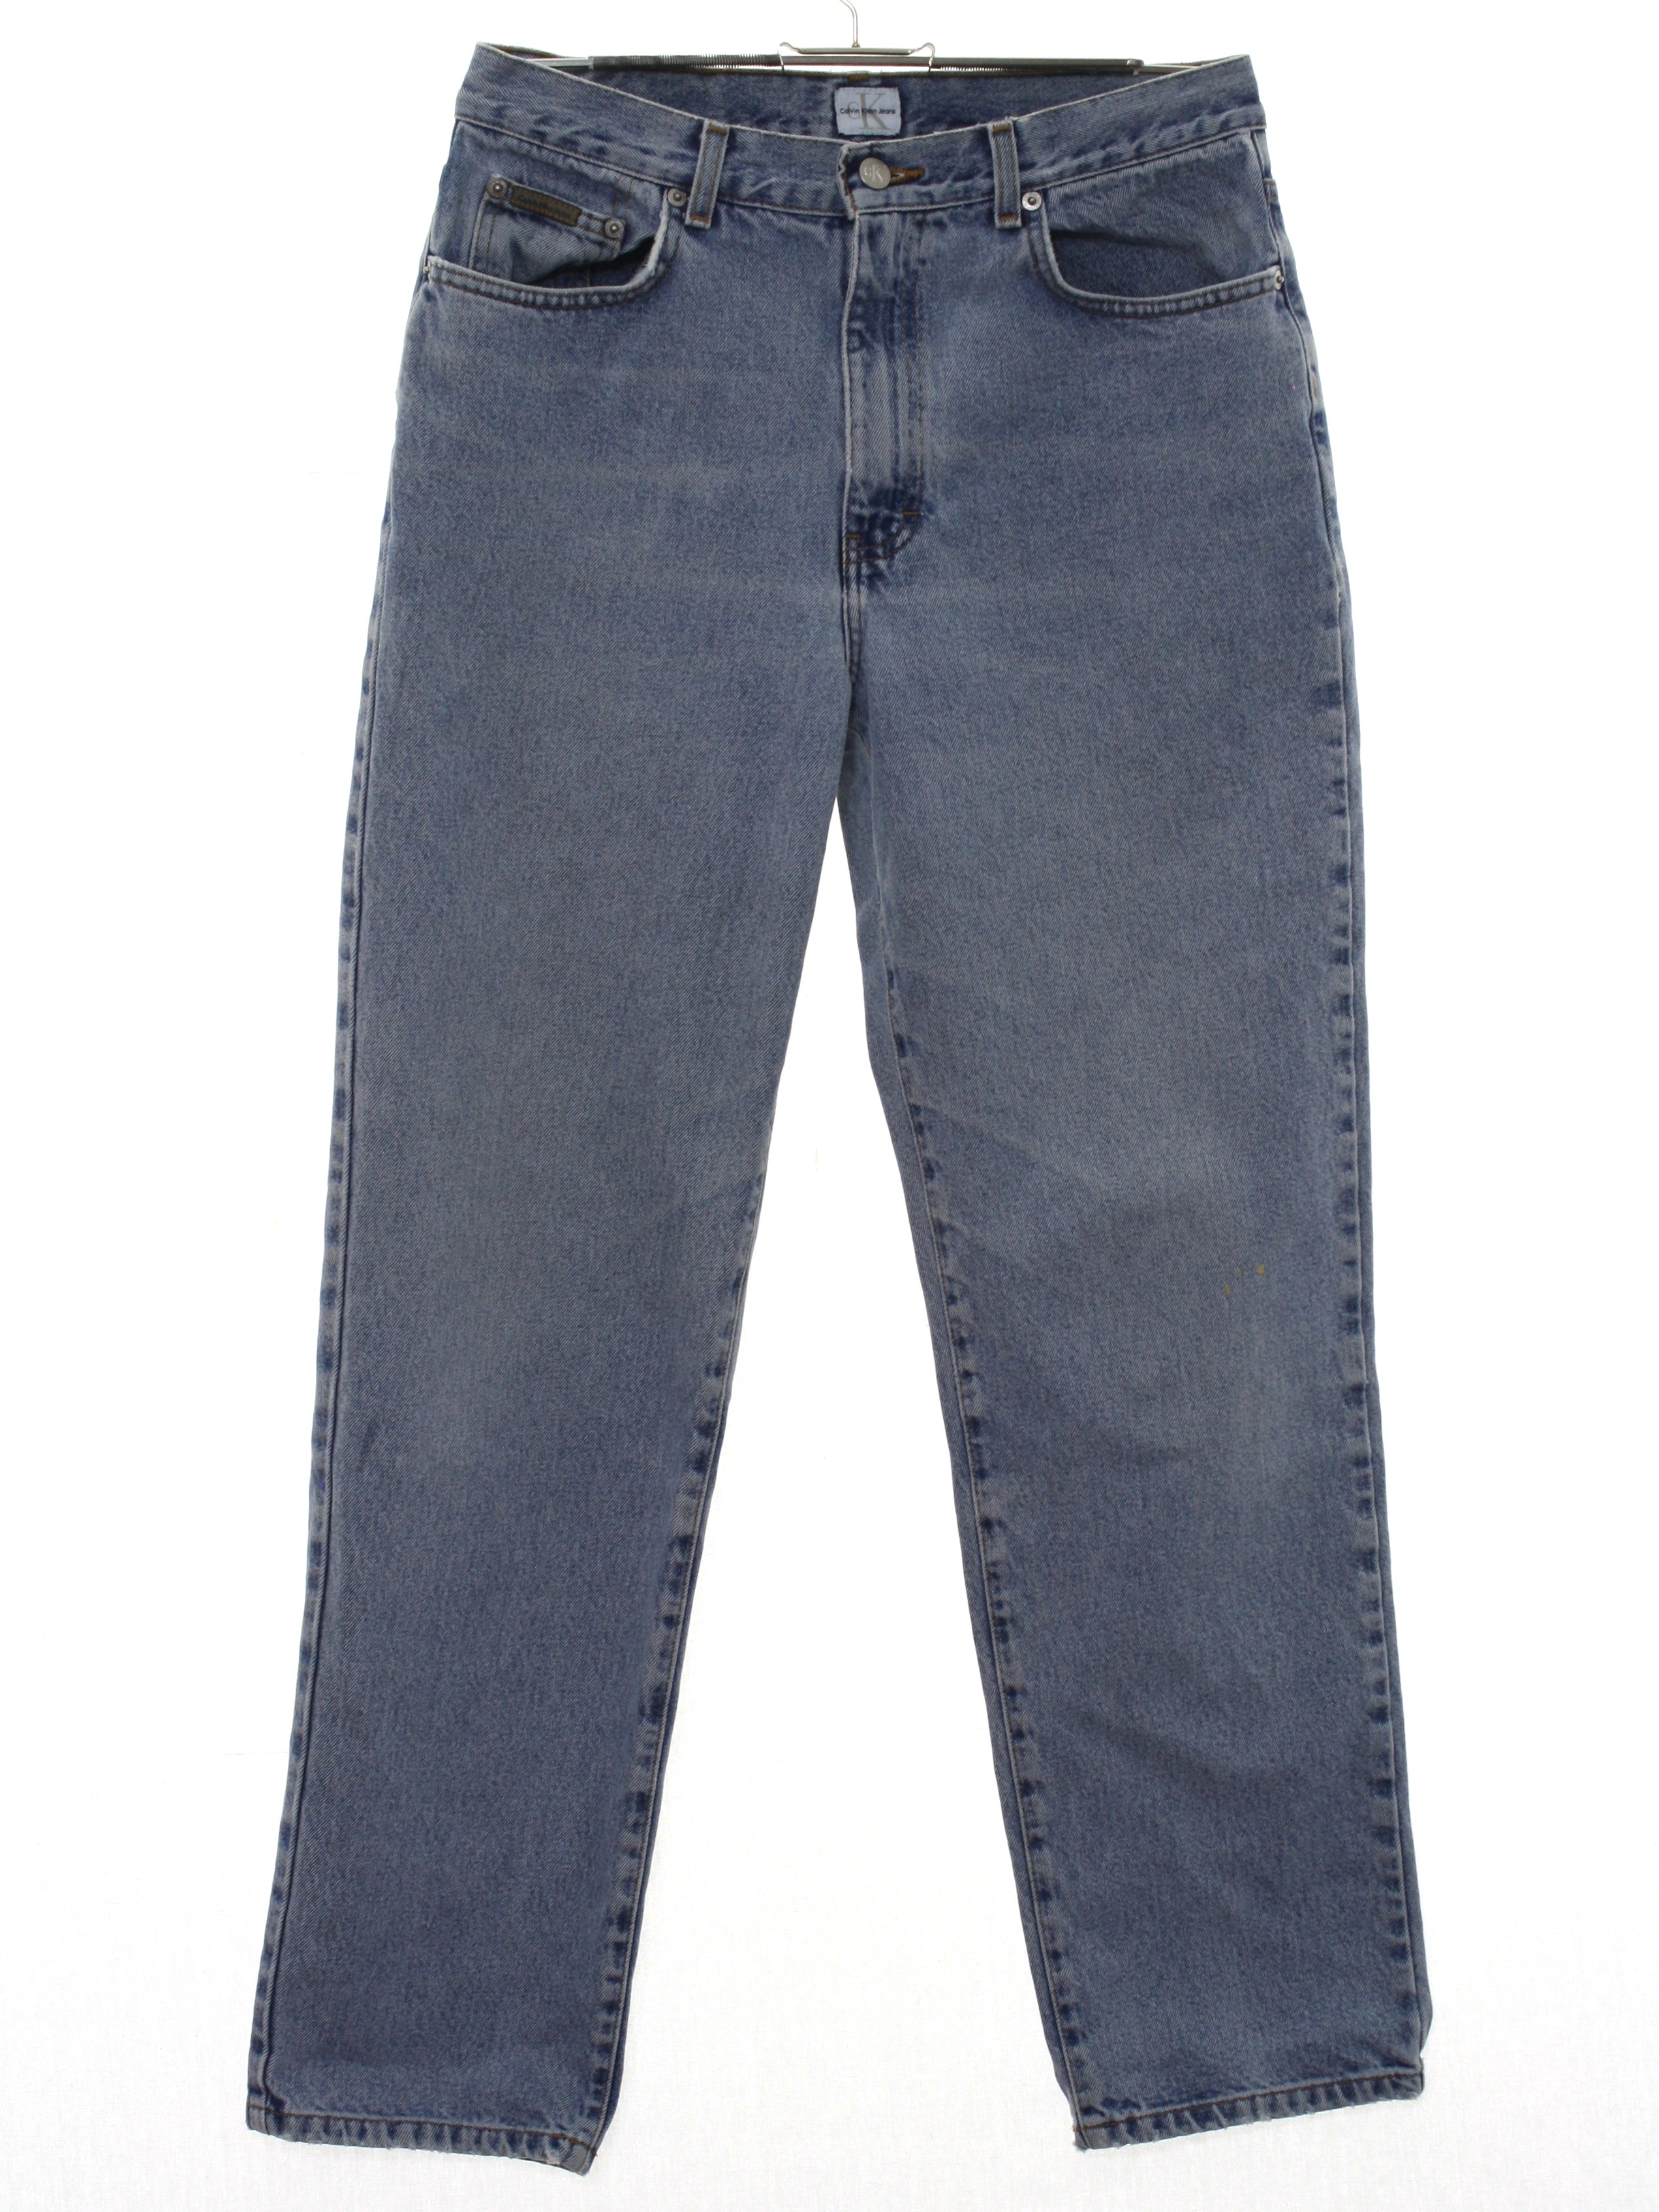 Vintage CK Calvin Klein Jeans Nineties Pants: s  CK Calvin Klein